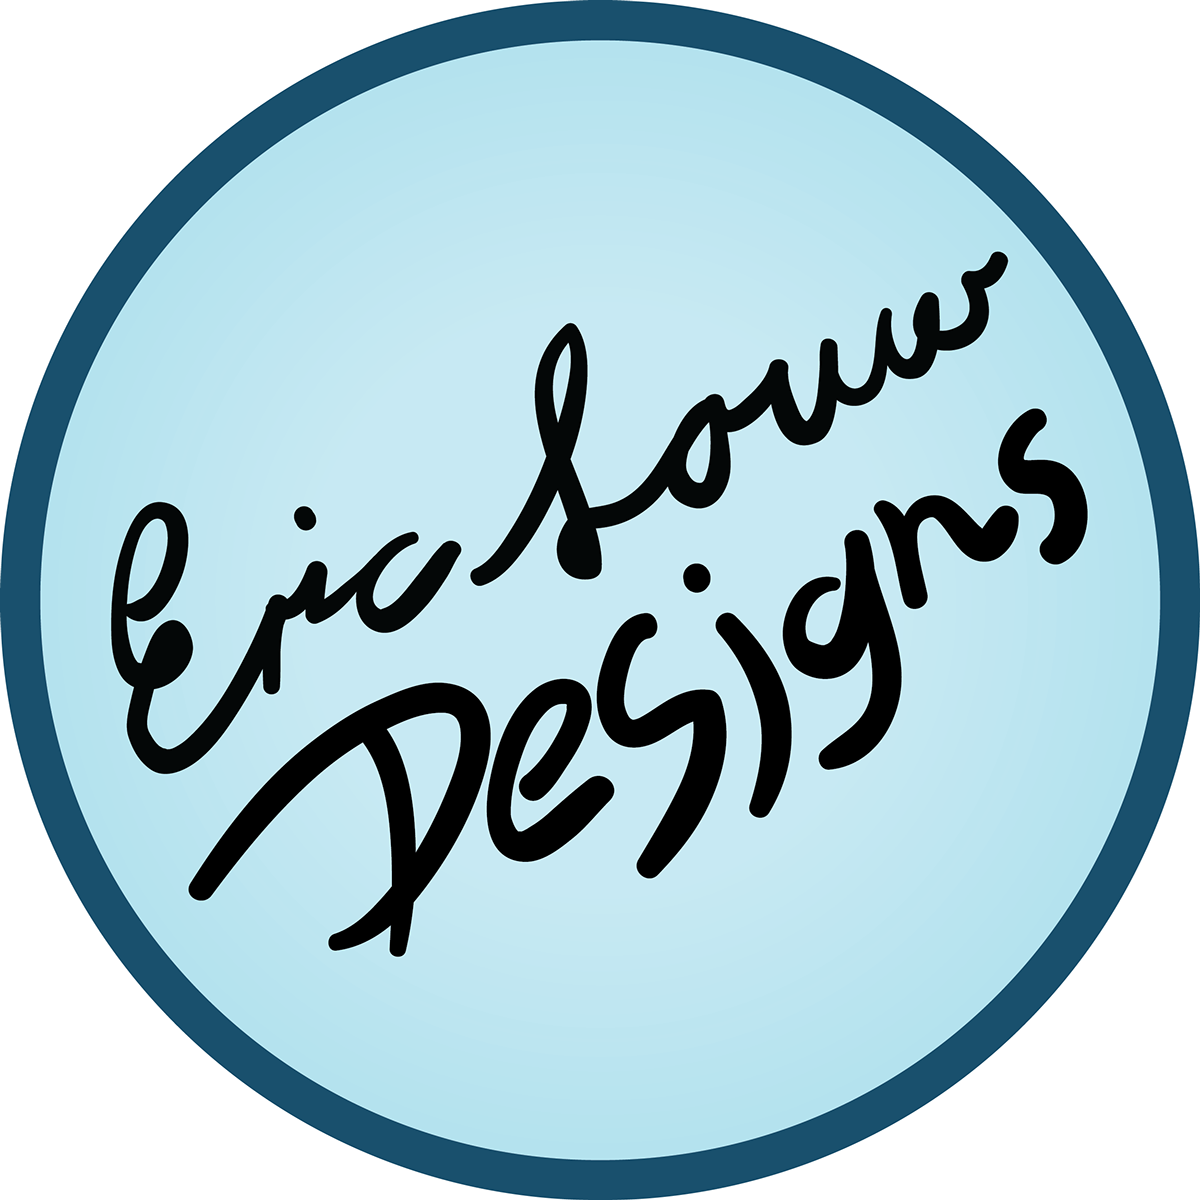 cursive Eric Louw designs logo minimalistic circle